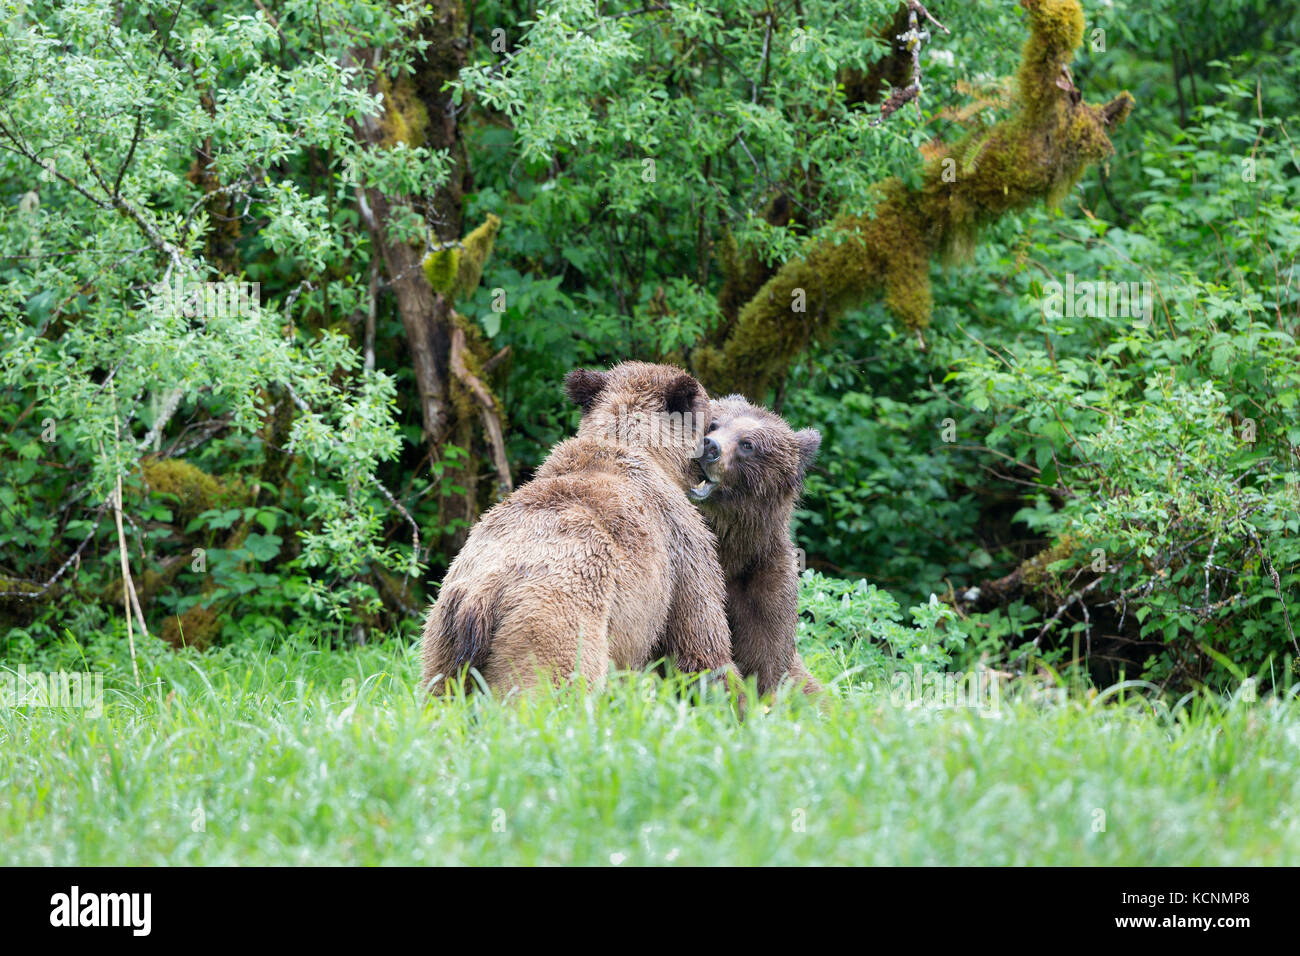 Oso grizzly (Ursus arctos horribilis), el joven macho y hembra (izquierda) el cortejo, admisión, khutzeymateen khutzeymateen Grizzly Bear sanctuary, British Columbia, Canadá. Foto de stock